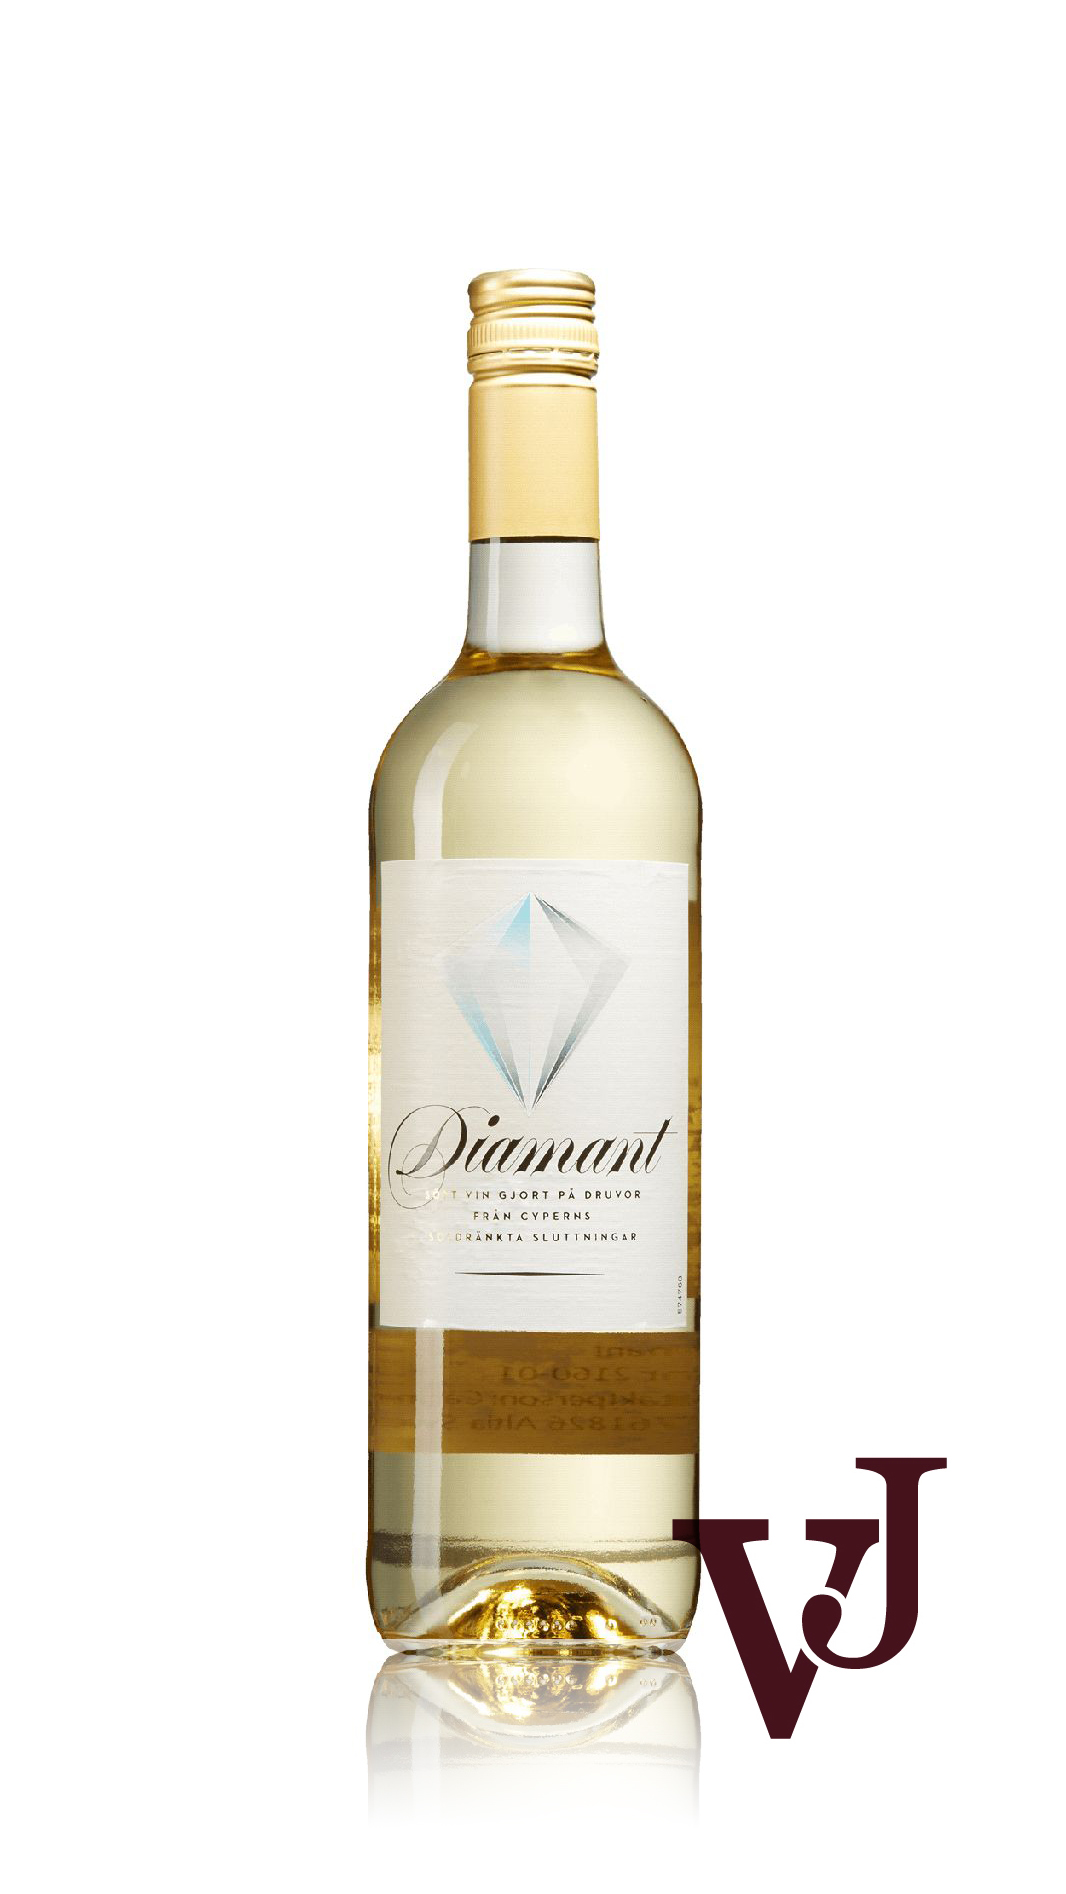 Övrigt vin - Diamant artikel nummer 216001 från producenten Altia från området Cypern